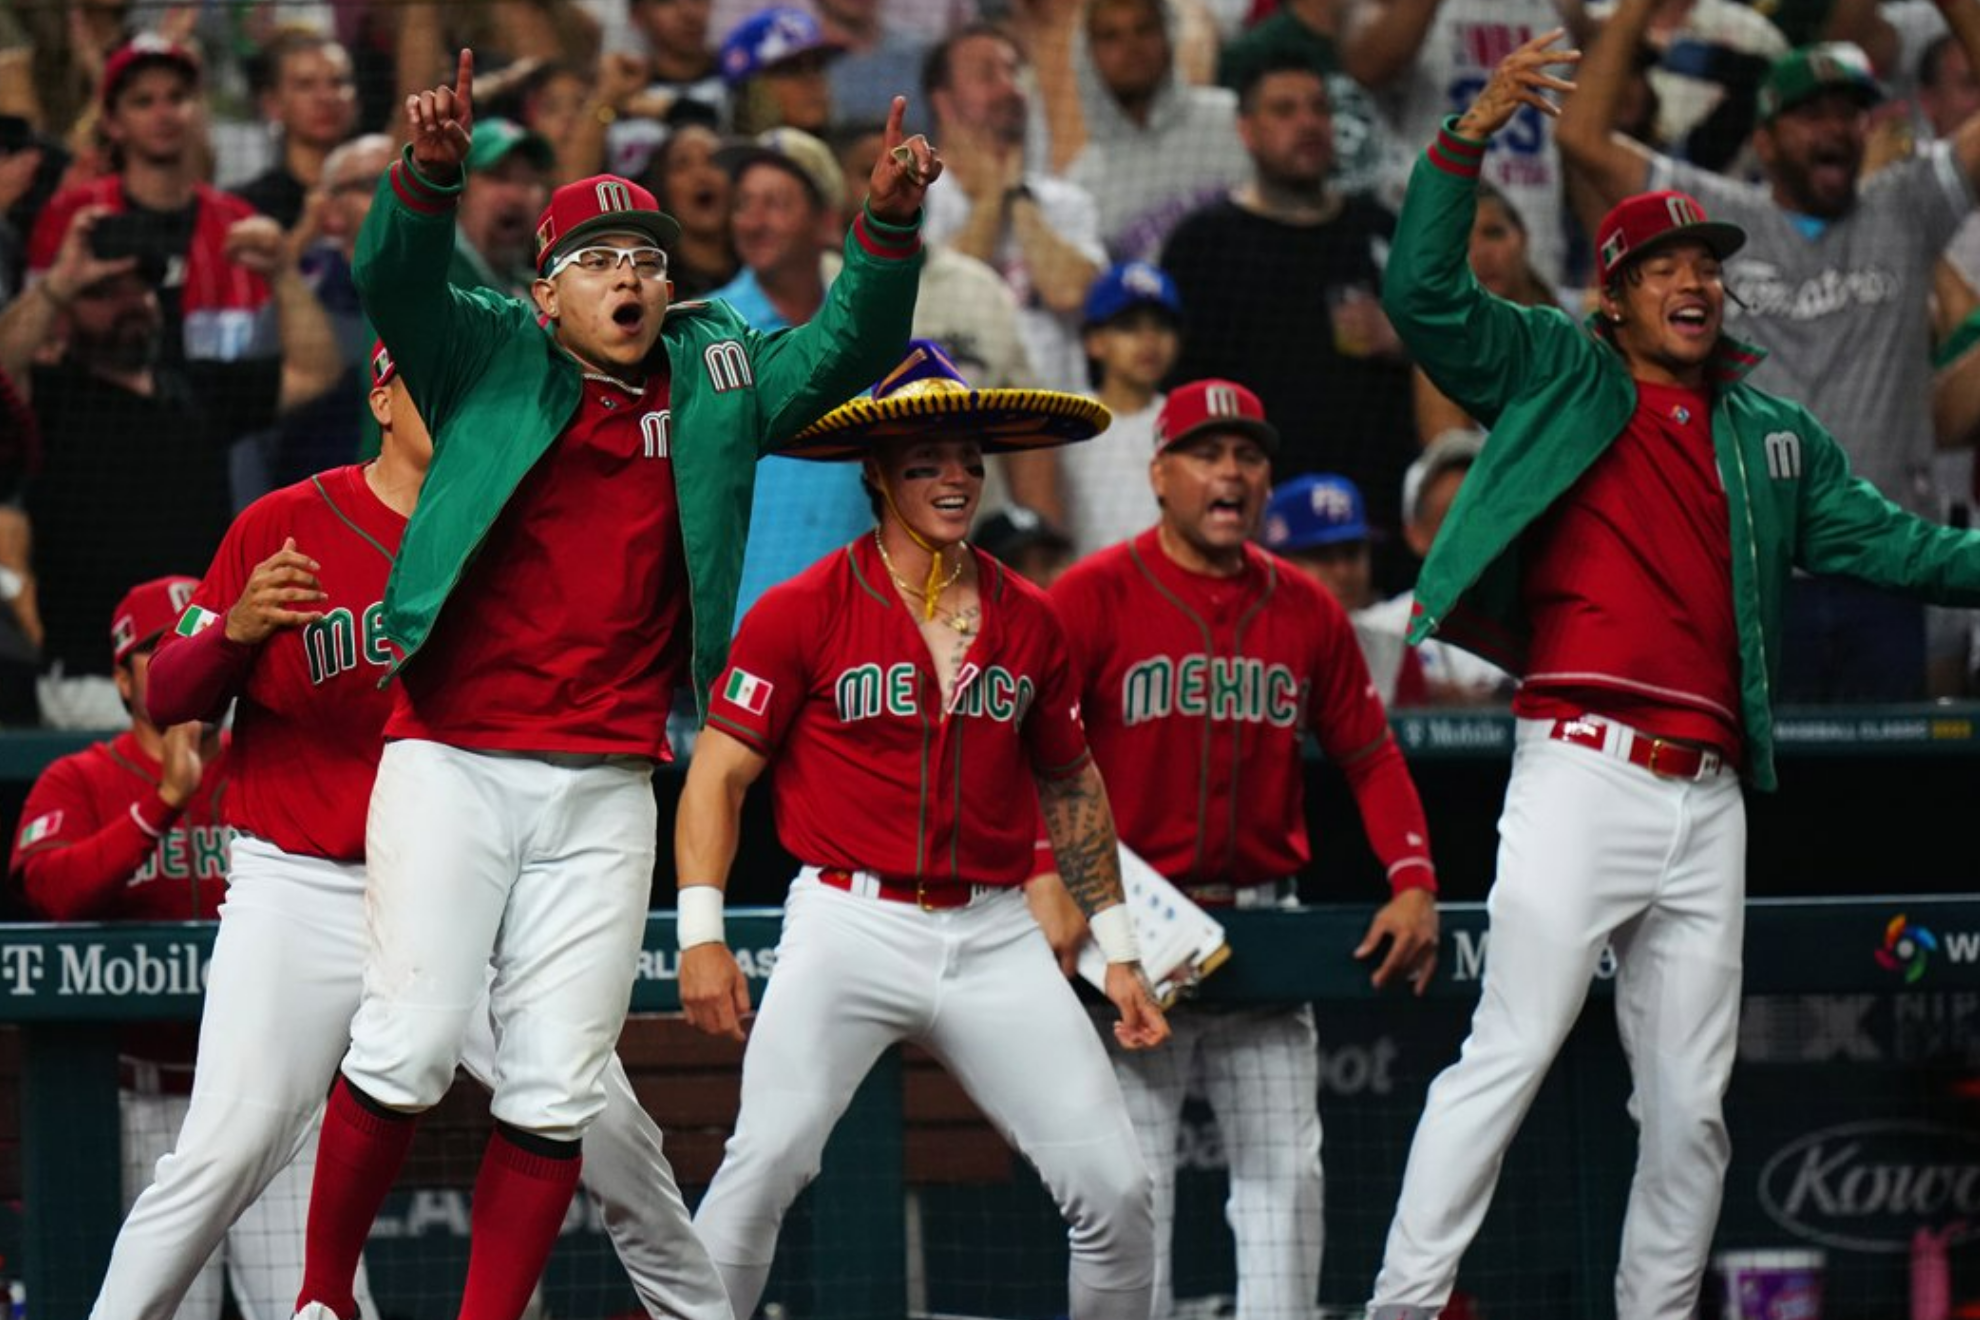 Clásico Mundial de Béisbol 2023: Cómo ver el juego de México vs. Japón